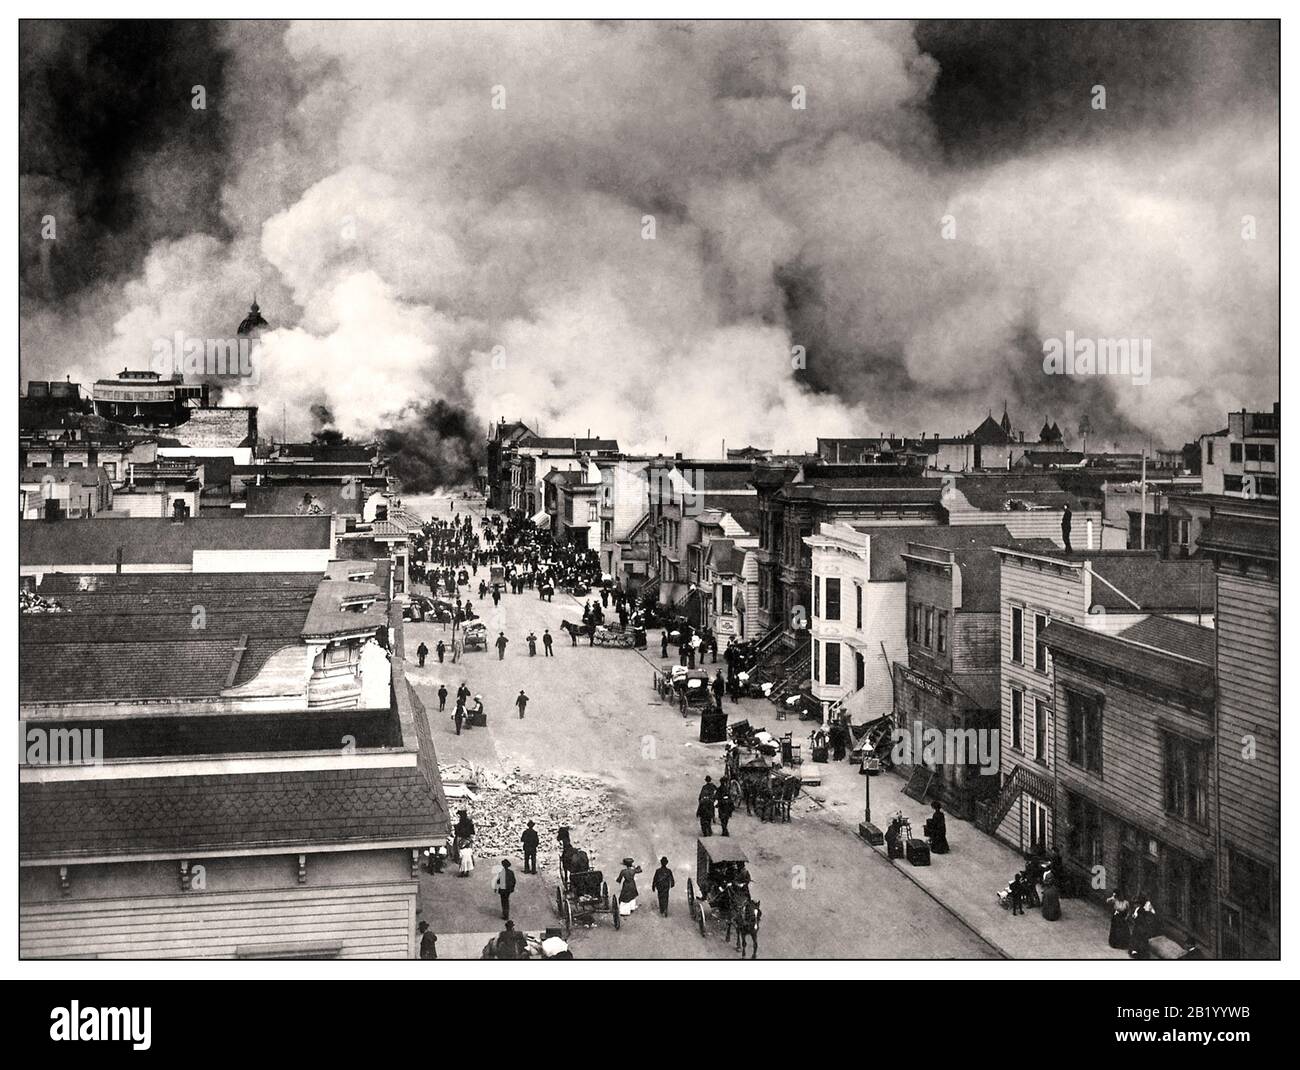 Erdbeben in San Francisco von 1906 B&W-Bild des San Francisco Mission District, das nach dem Erdbeben von San Francisco von 1906 brannte. Kalifornien US EIN schweres Erdbeben, das San Francisco und die Küste Nordkaliforniens am Mittwoch, den 18. April 1906 um 5:12 Uhr erschütterte Stockfoto